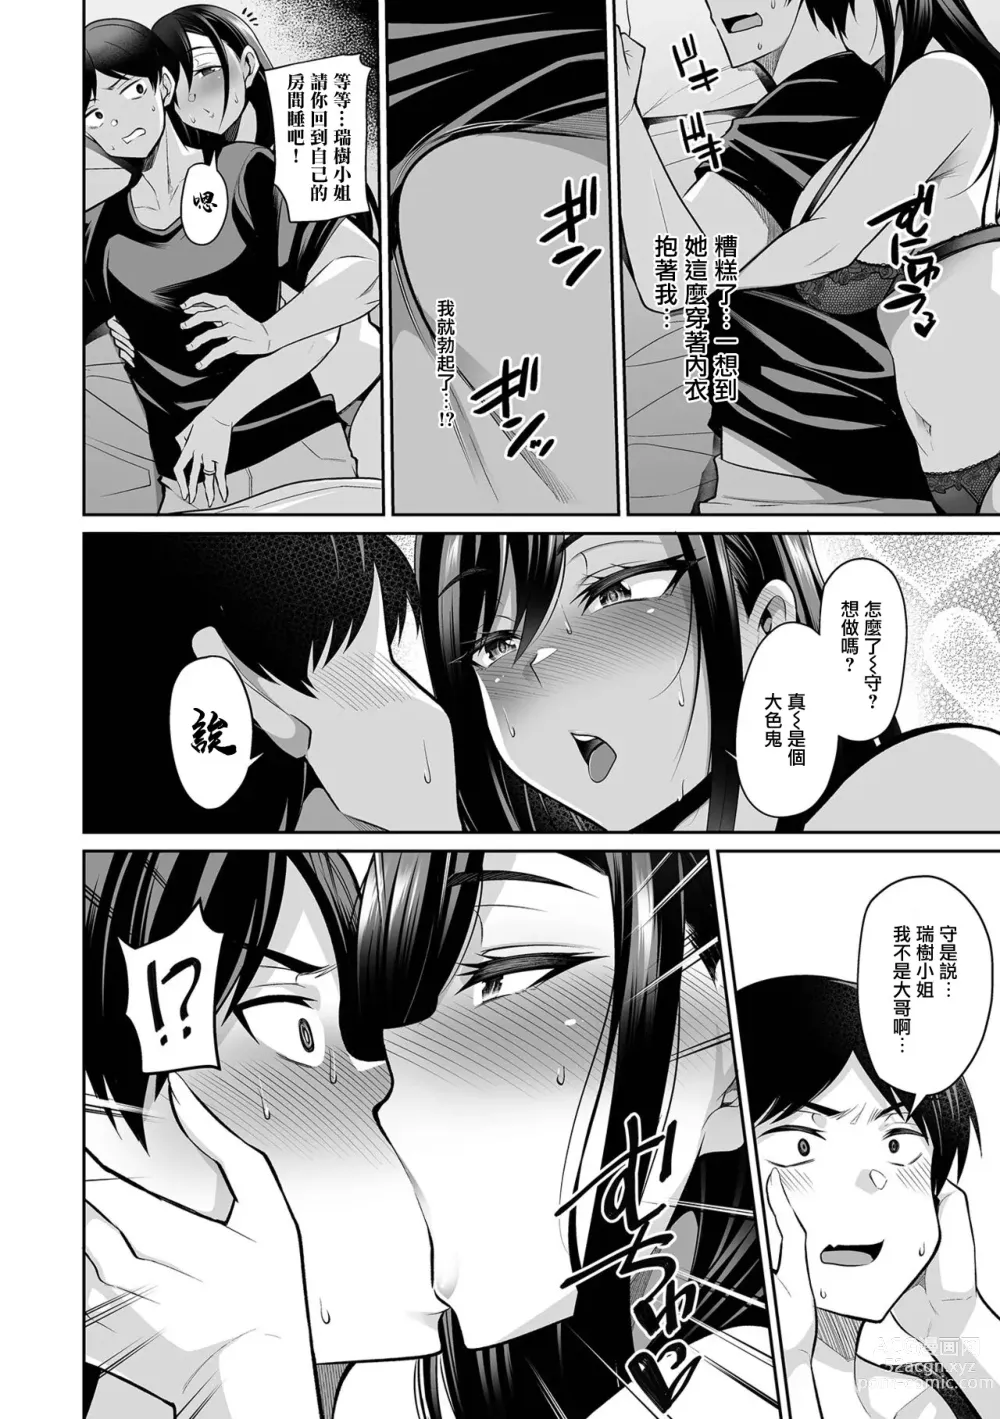 Page 4 of manga NikYobai Aniyome